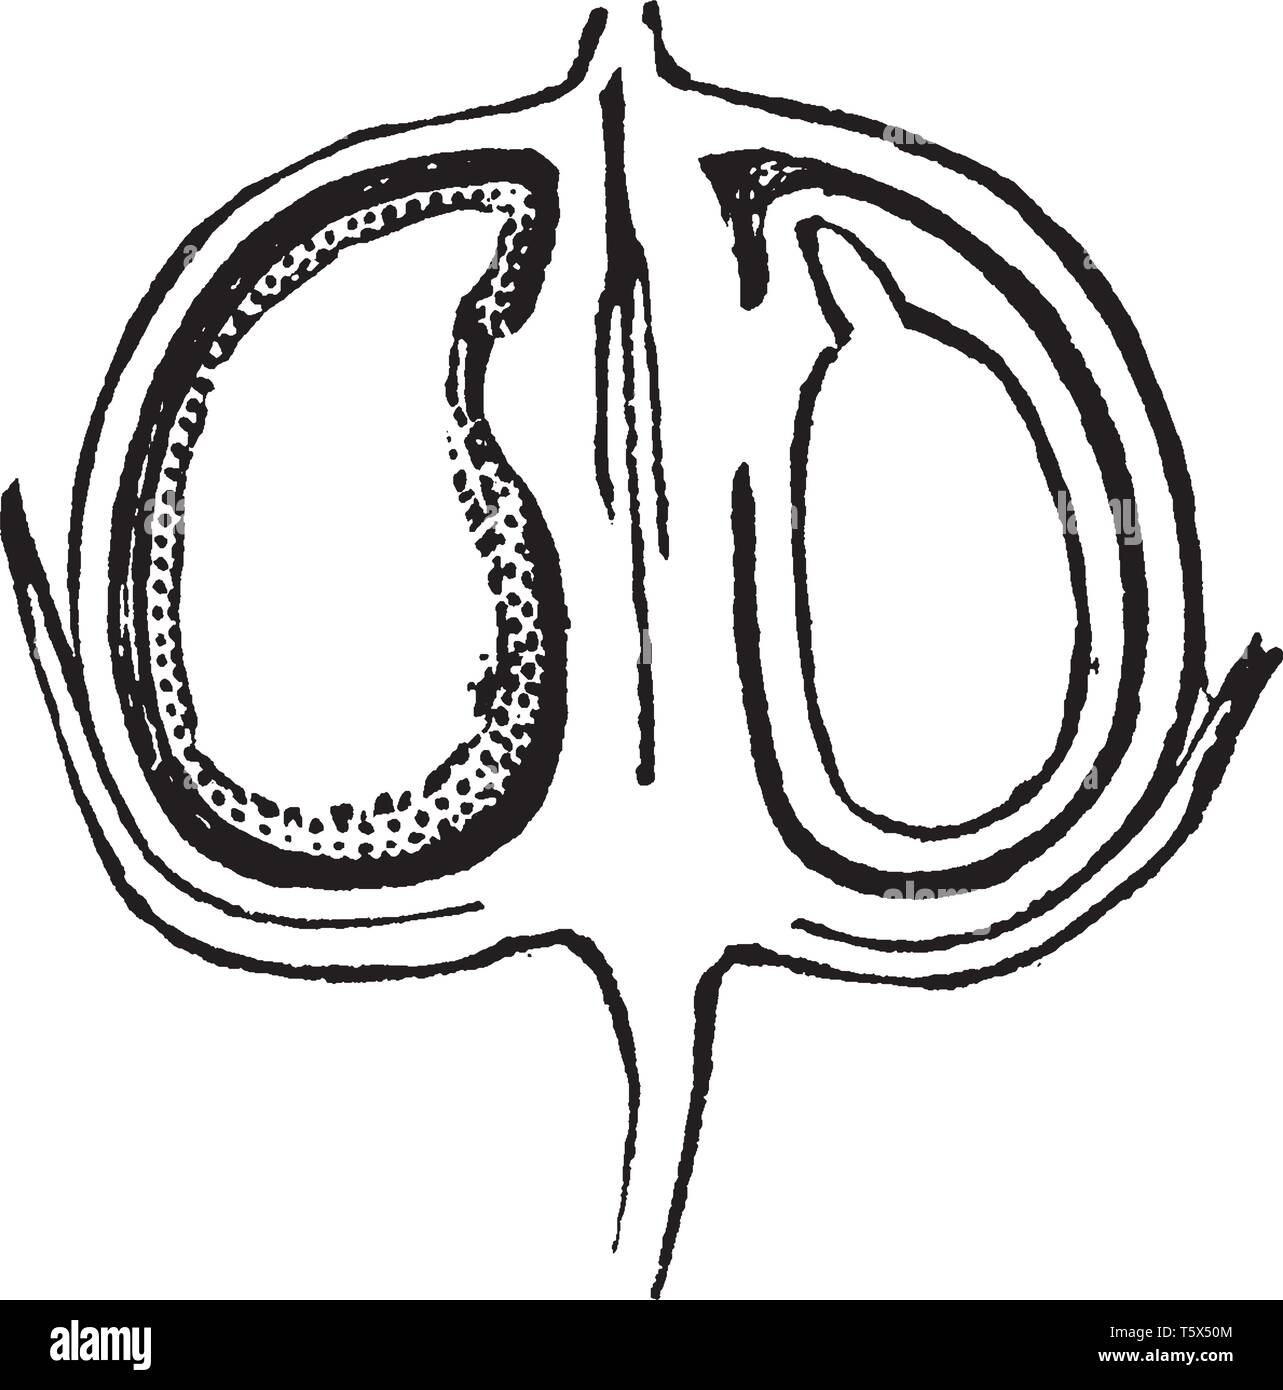 Una foto che mostra il lino Pod tagliato a metà. Questa è una sezione longitudinale dei semi di lino è tagliato a metà e mostra il contenuto embrione, vintage linea d Illustrazione Vettoriale